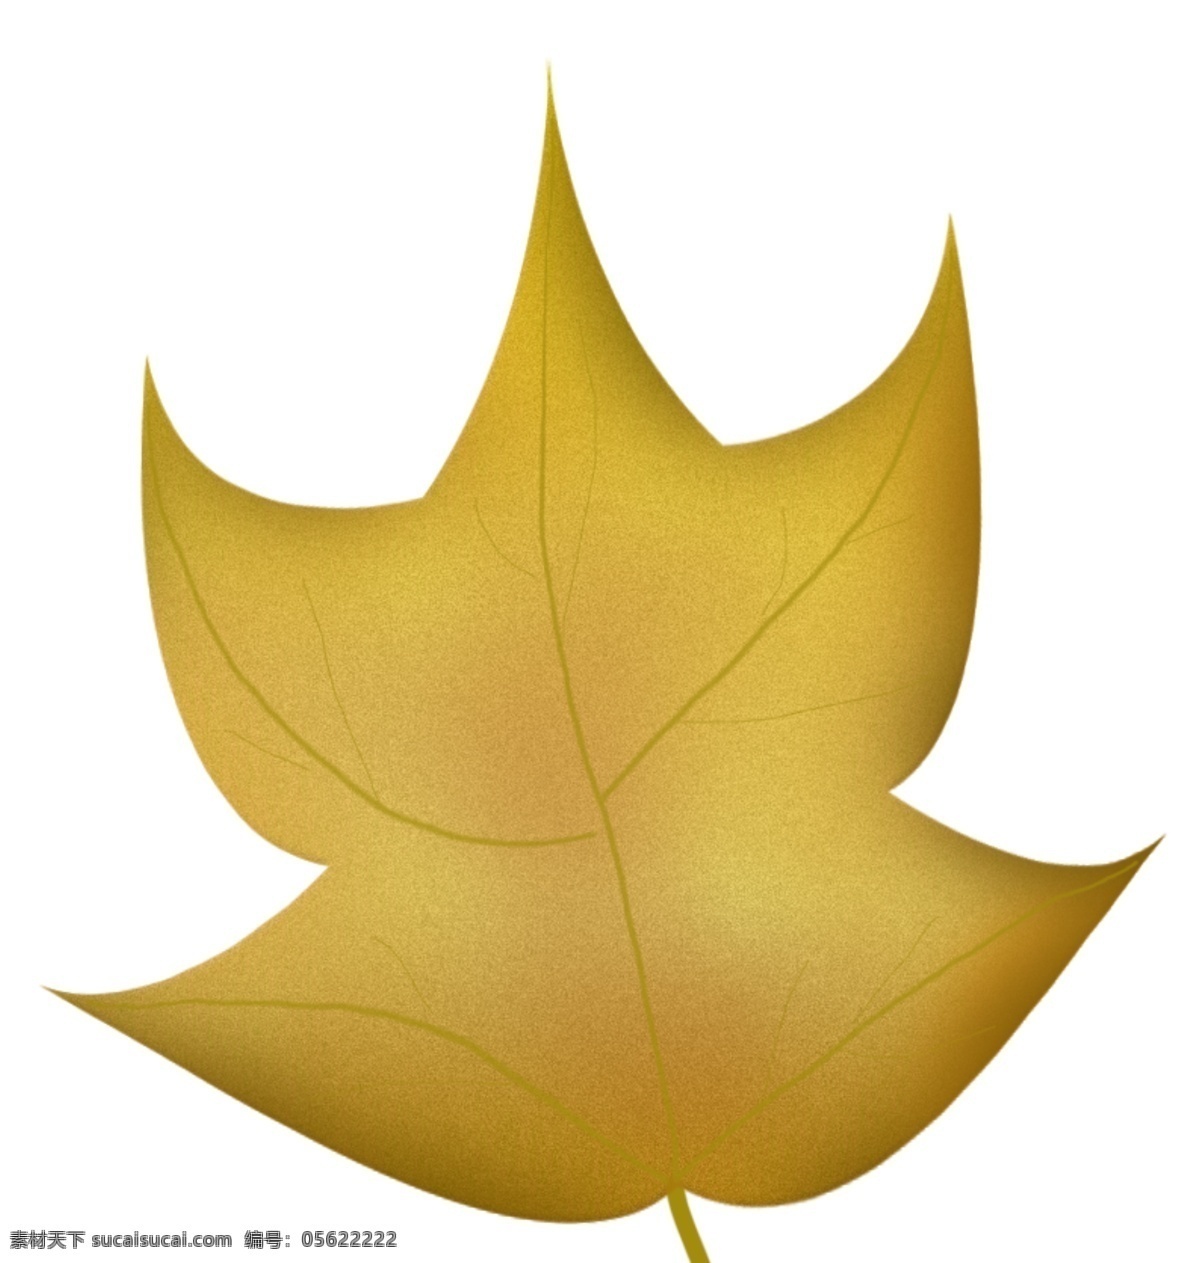 黄色 质感 枫叶 免 抠 图 卡通手绘 水彩 叶子 植物 落叶 秋天 质感叶子 创意 抽象 小清新 唯美 秋季 漂浮